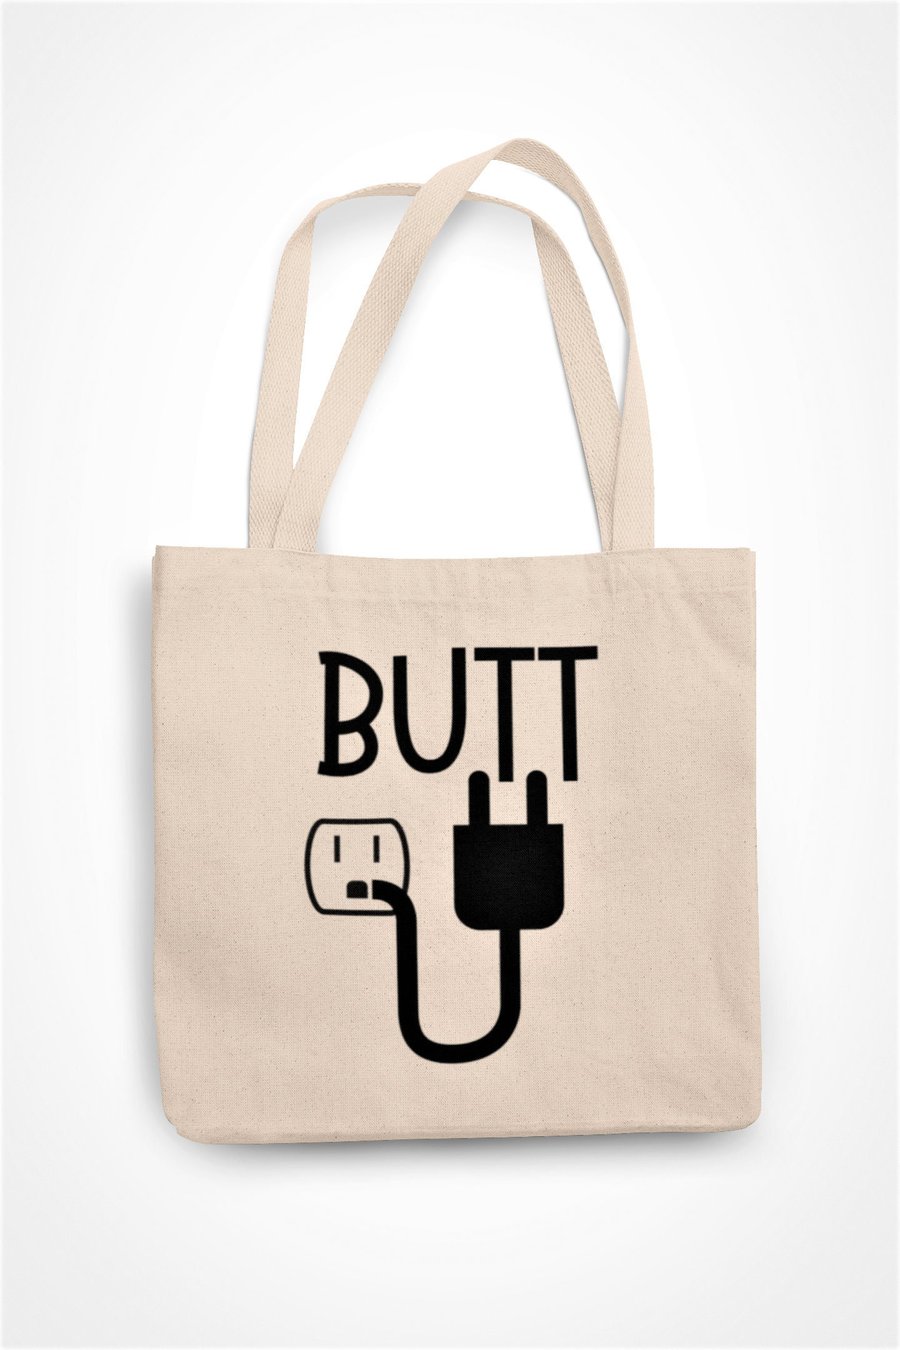 Butt Plug Tote Bag Rude Funny Novelty Gift Gay Joke Present Gay Humour Christmas